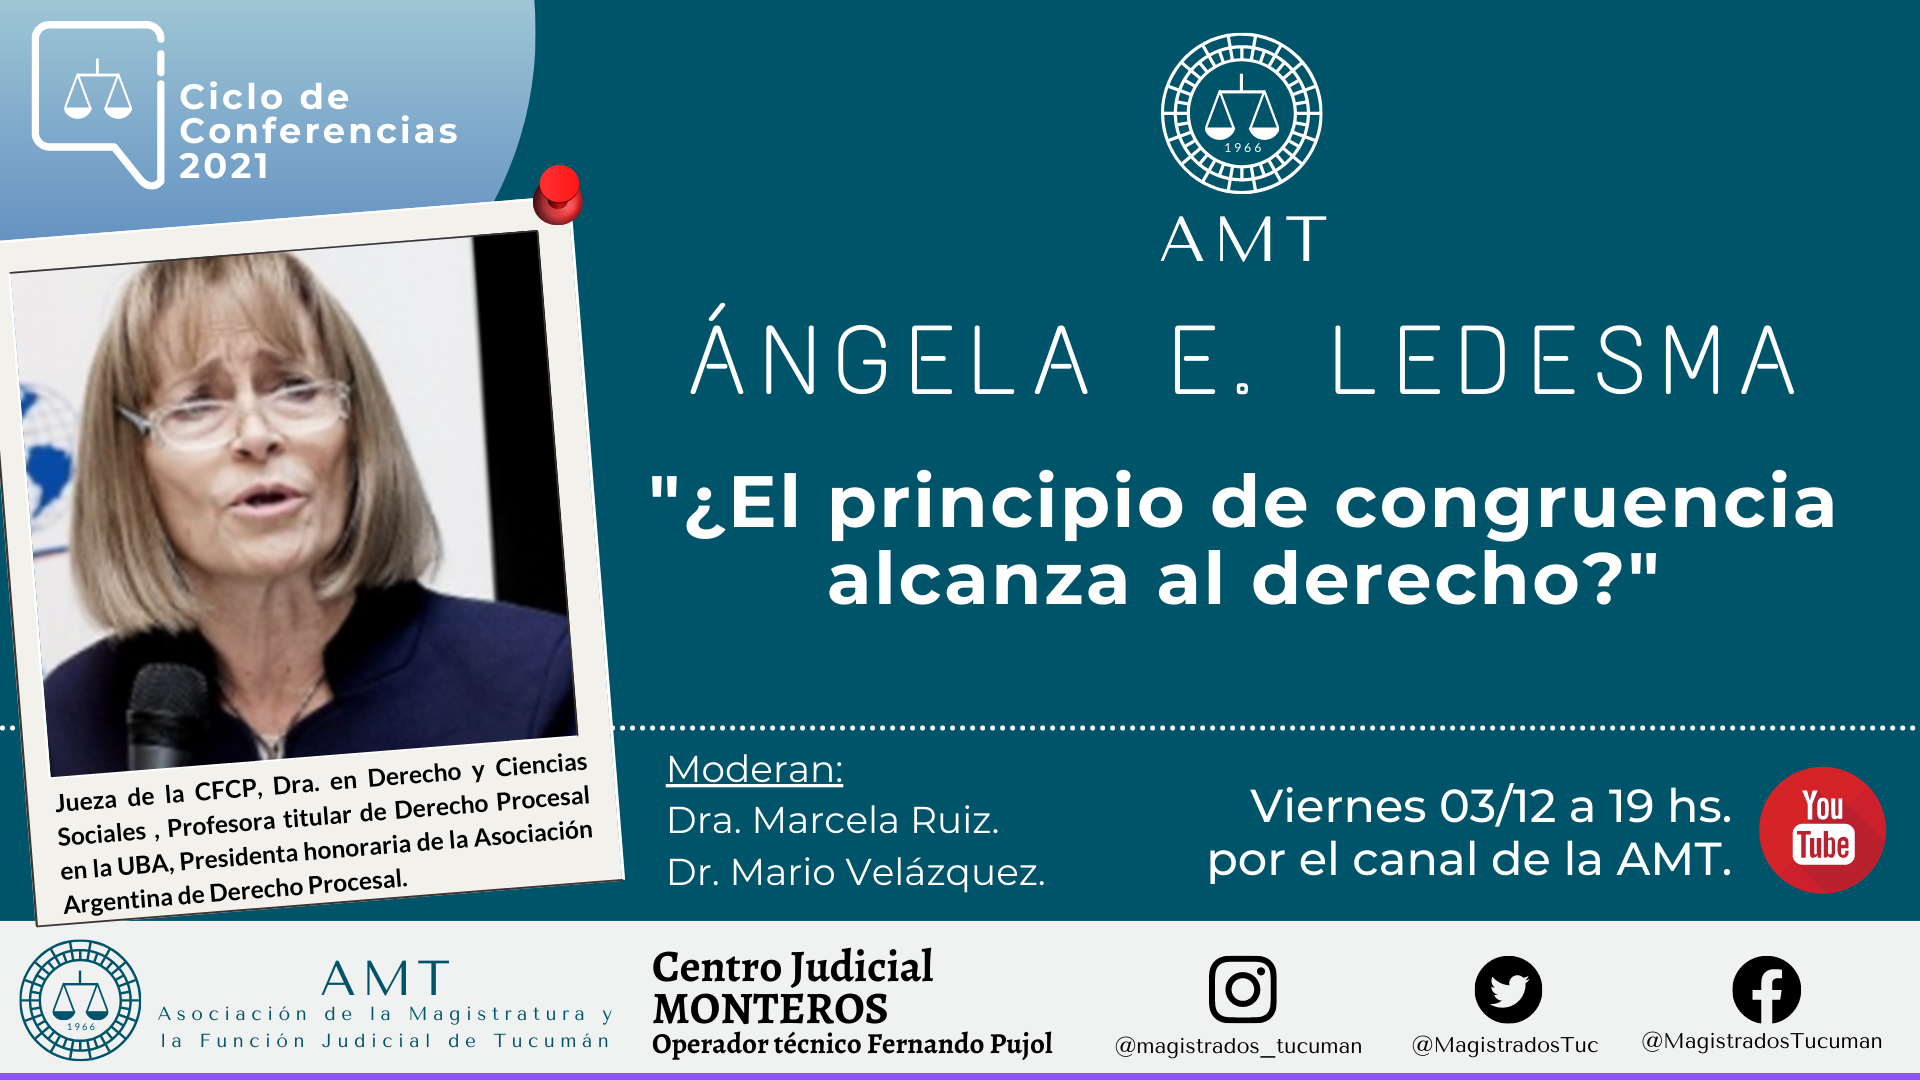 Vuelva a ver la conferencia de Ángela E. Ledesma «¿El principio de congruencia alcanza al derecho?»